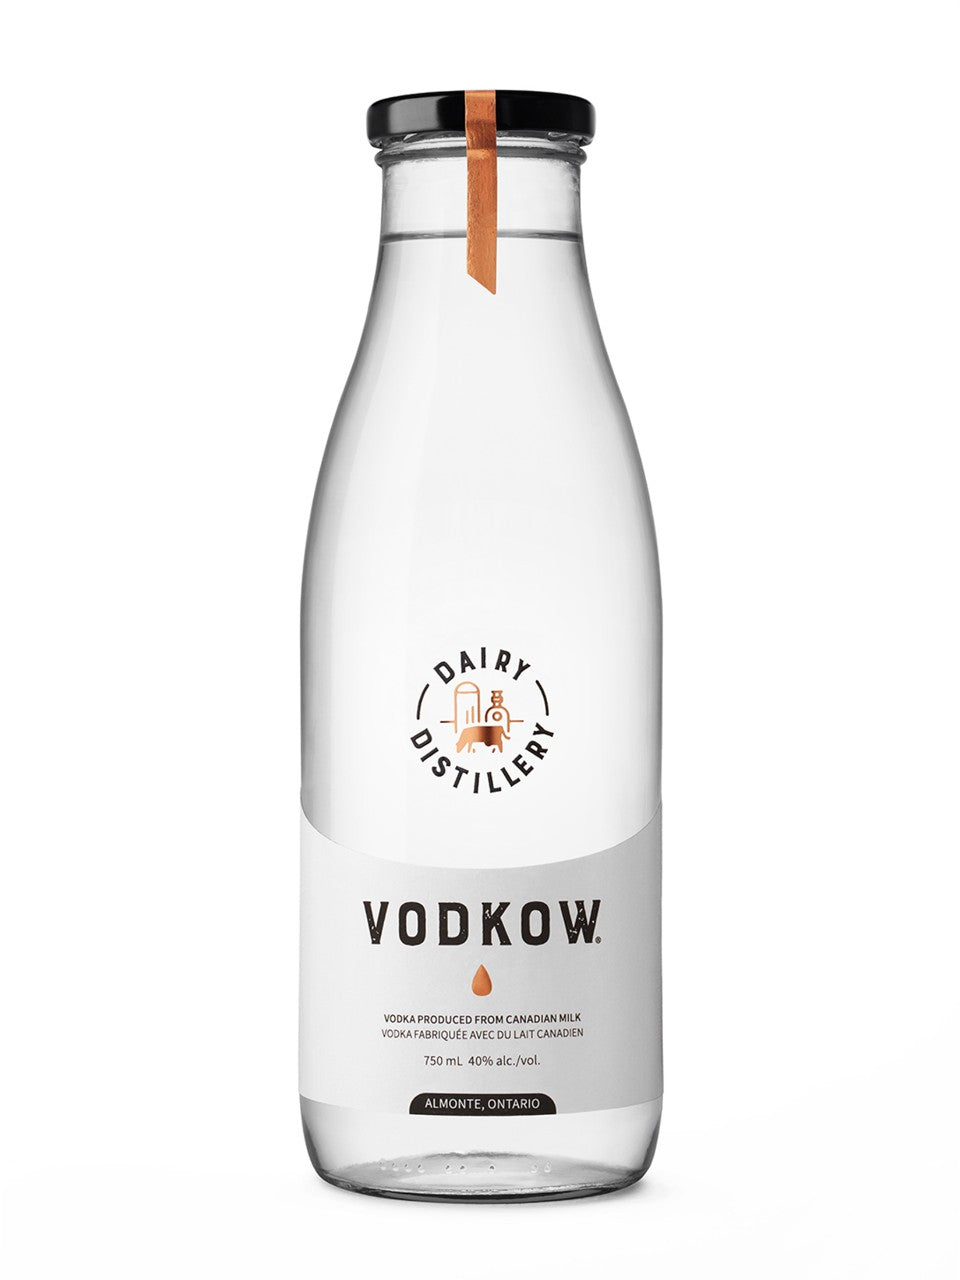 Vodkow 750 mL bottle